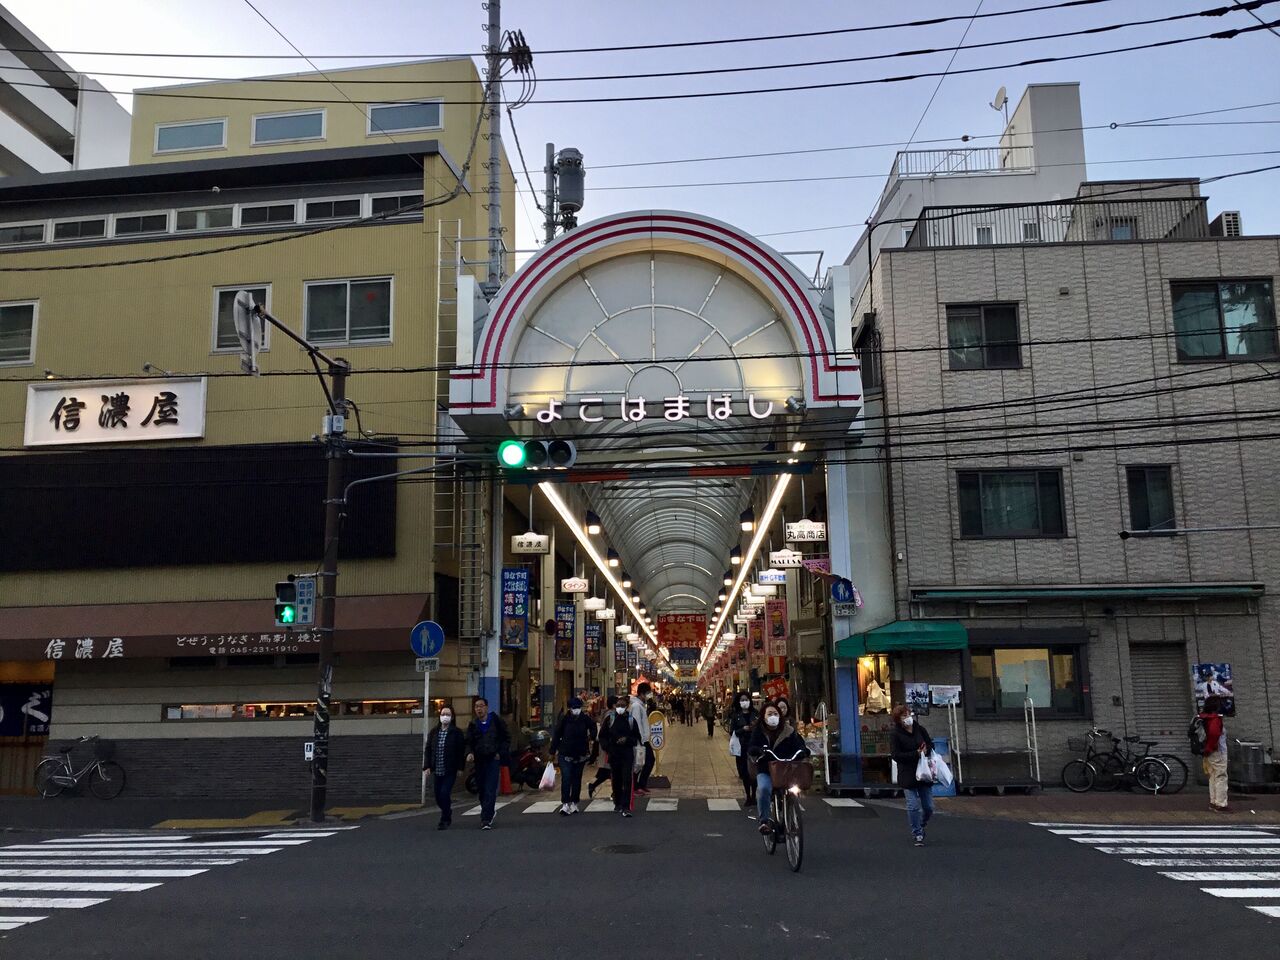 神奈川県横浜市 真金町のコリアタウン横浜橋市場 散歩と旅ときどき温泉